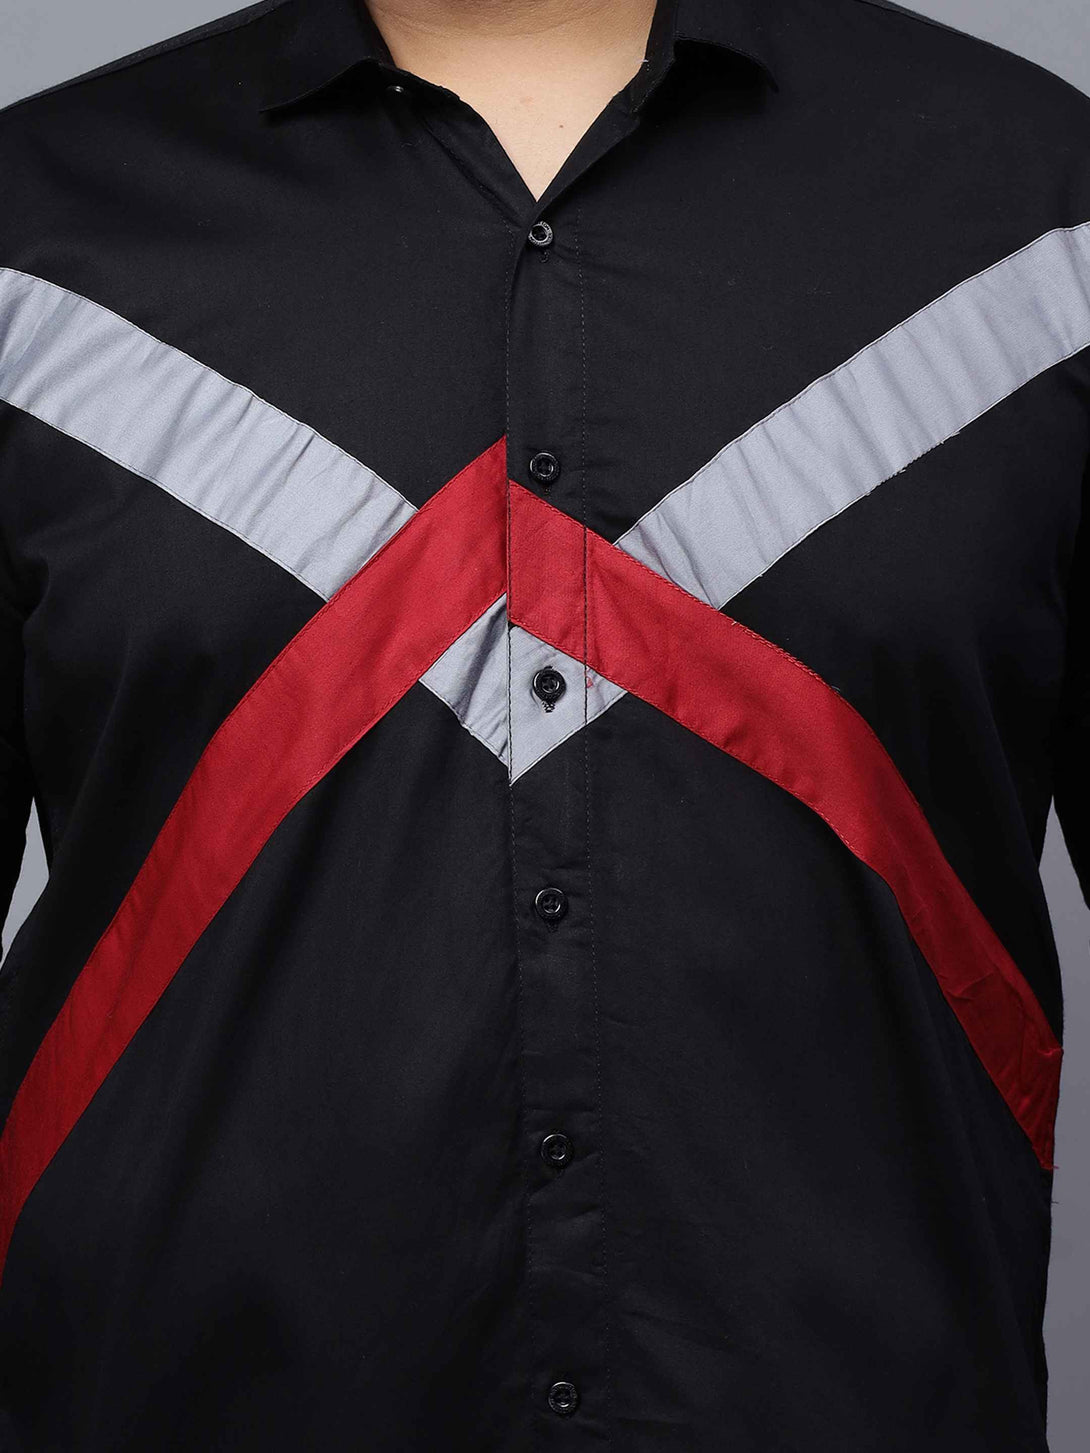 black grey red cut n sew plus size shirt